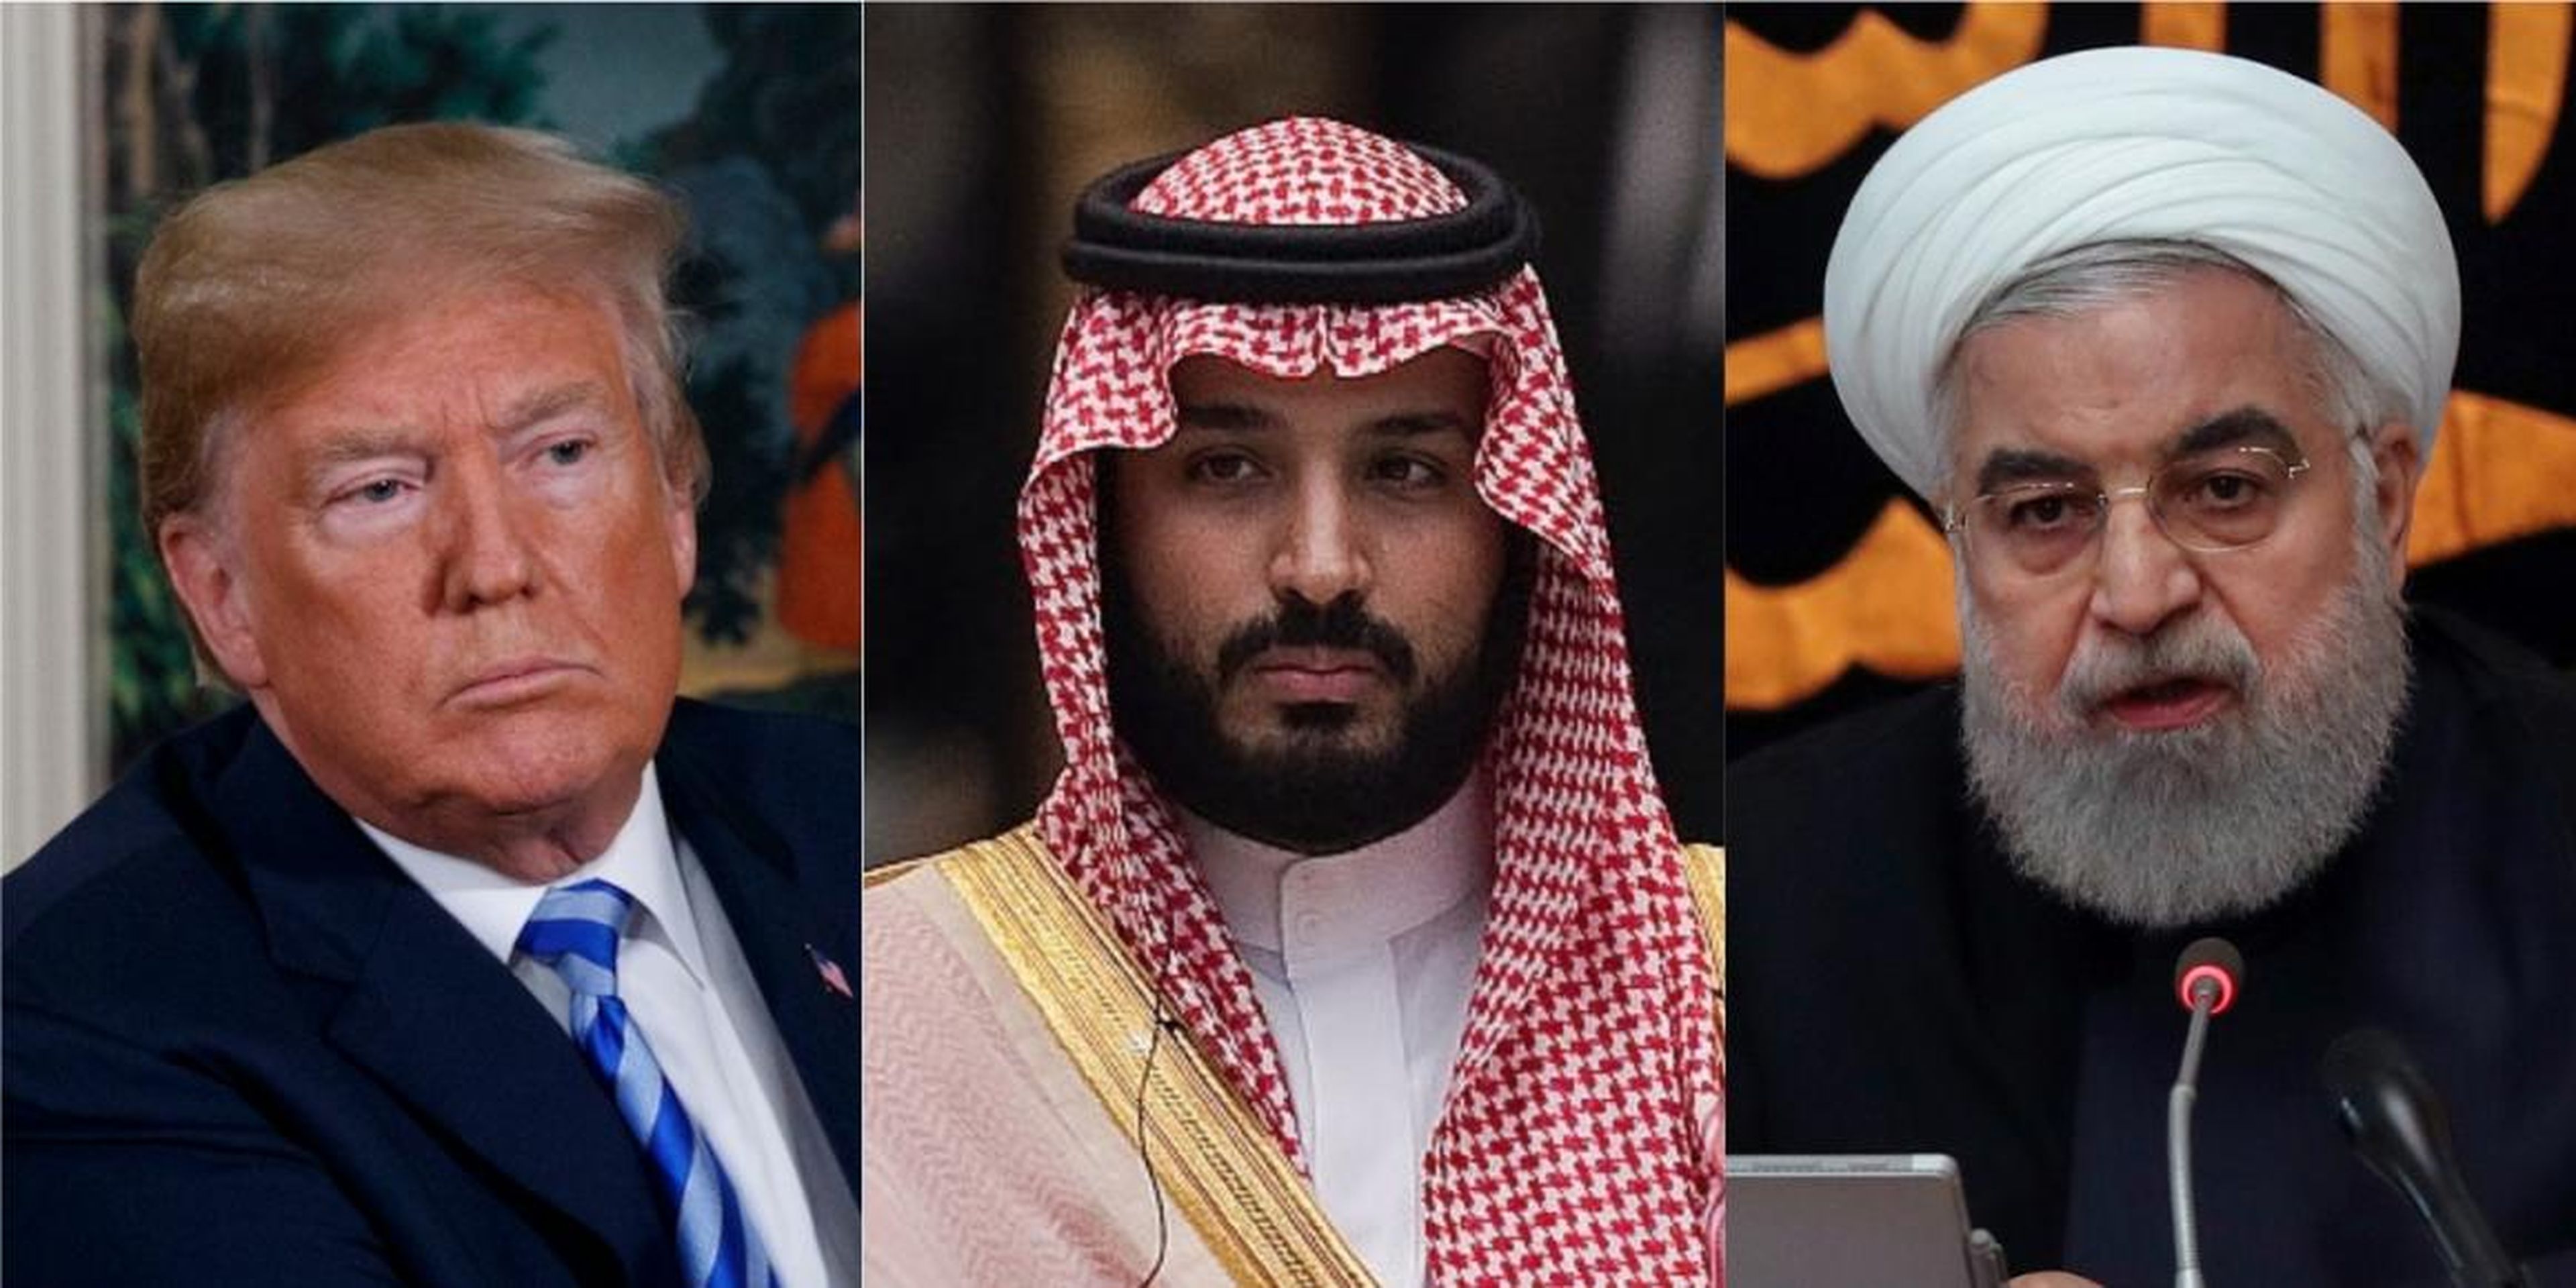 El presidente de EE.UU., Donald Trump, el príncipe saudí Mohammed bin Salman y el presidente de Irán, Hassan Rouhani